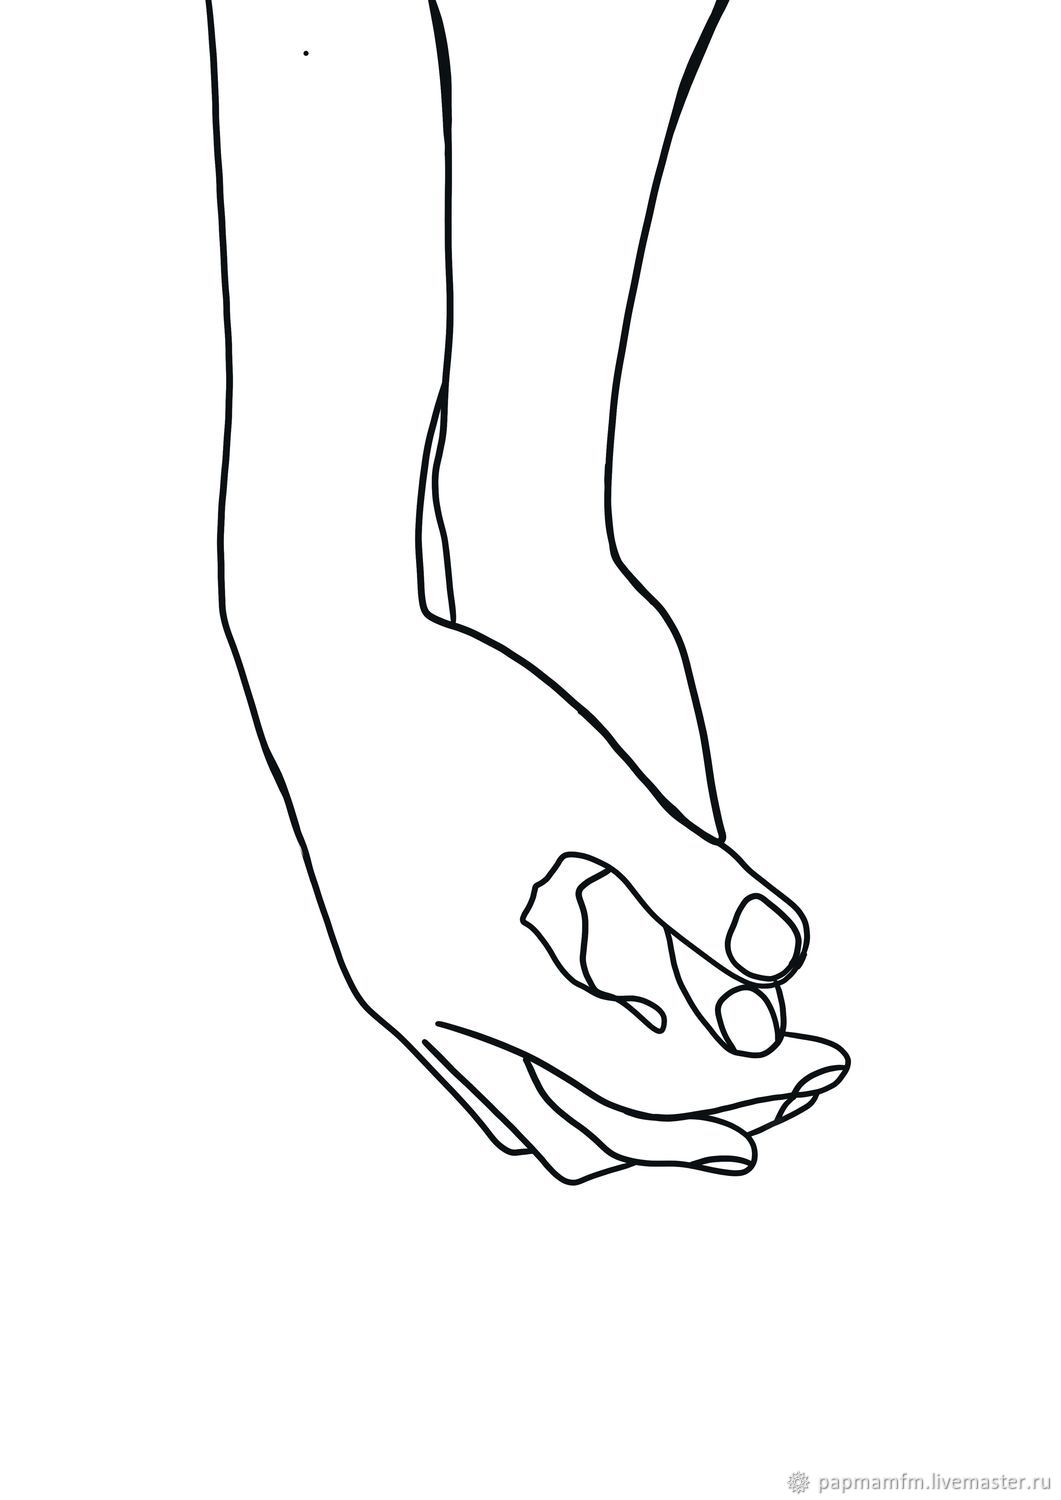 Рисунок двумя руками